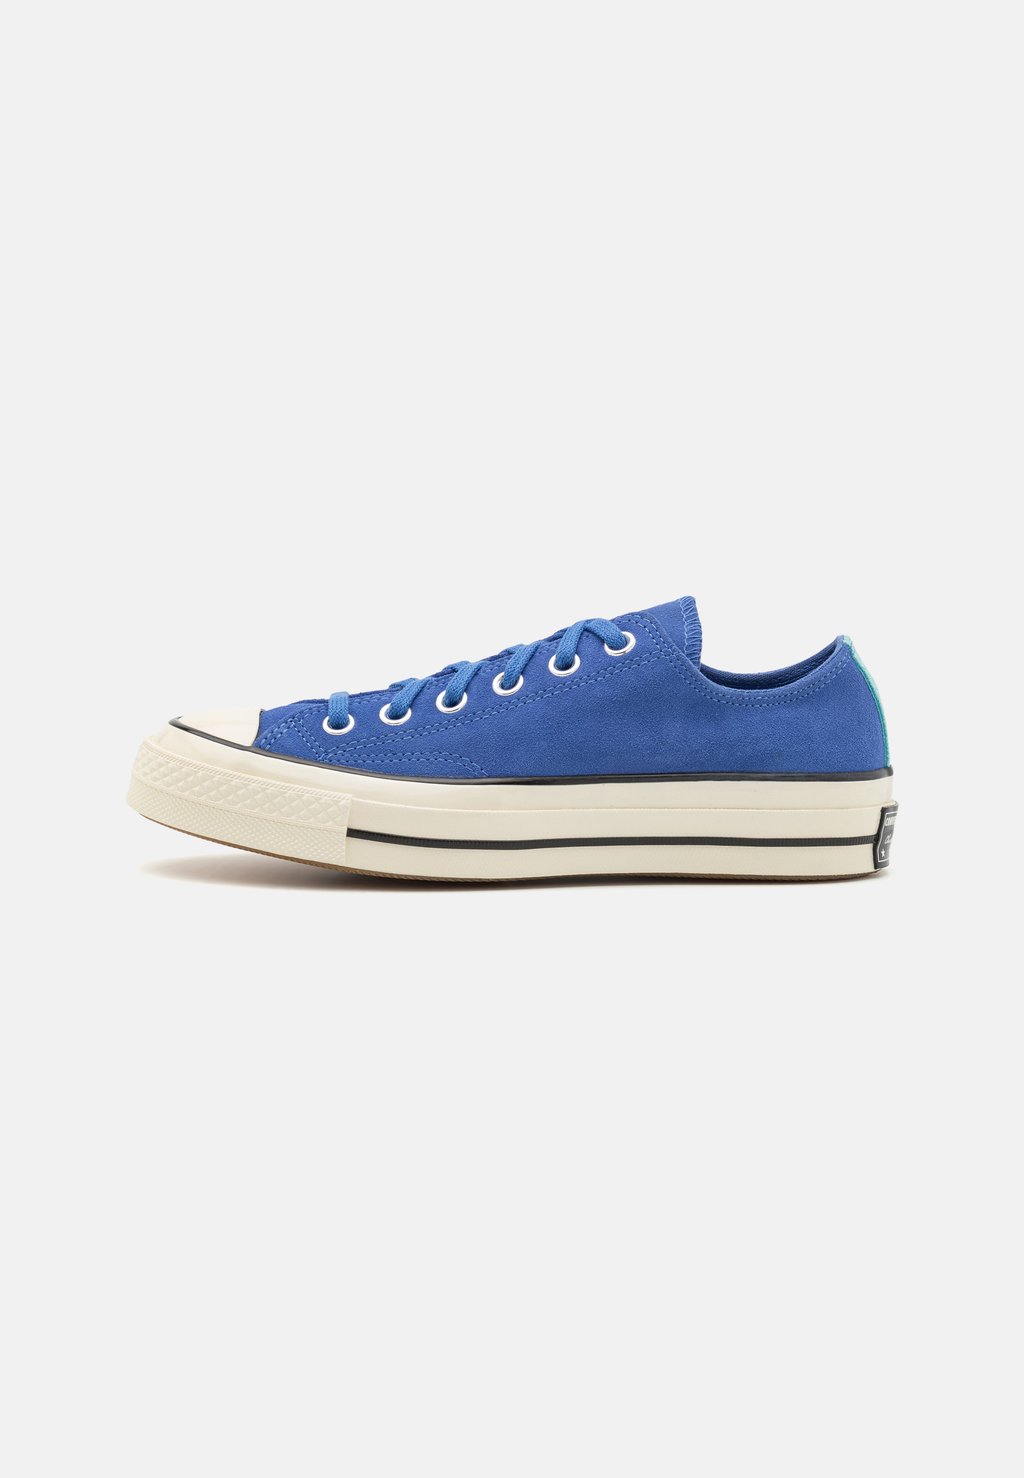 Низкие кроссовки Chuck 70 Converse, цвет ancestral blue/egret/black